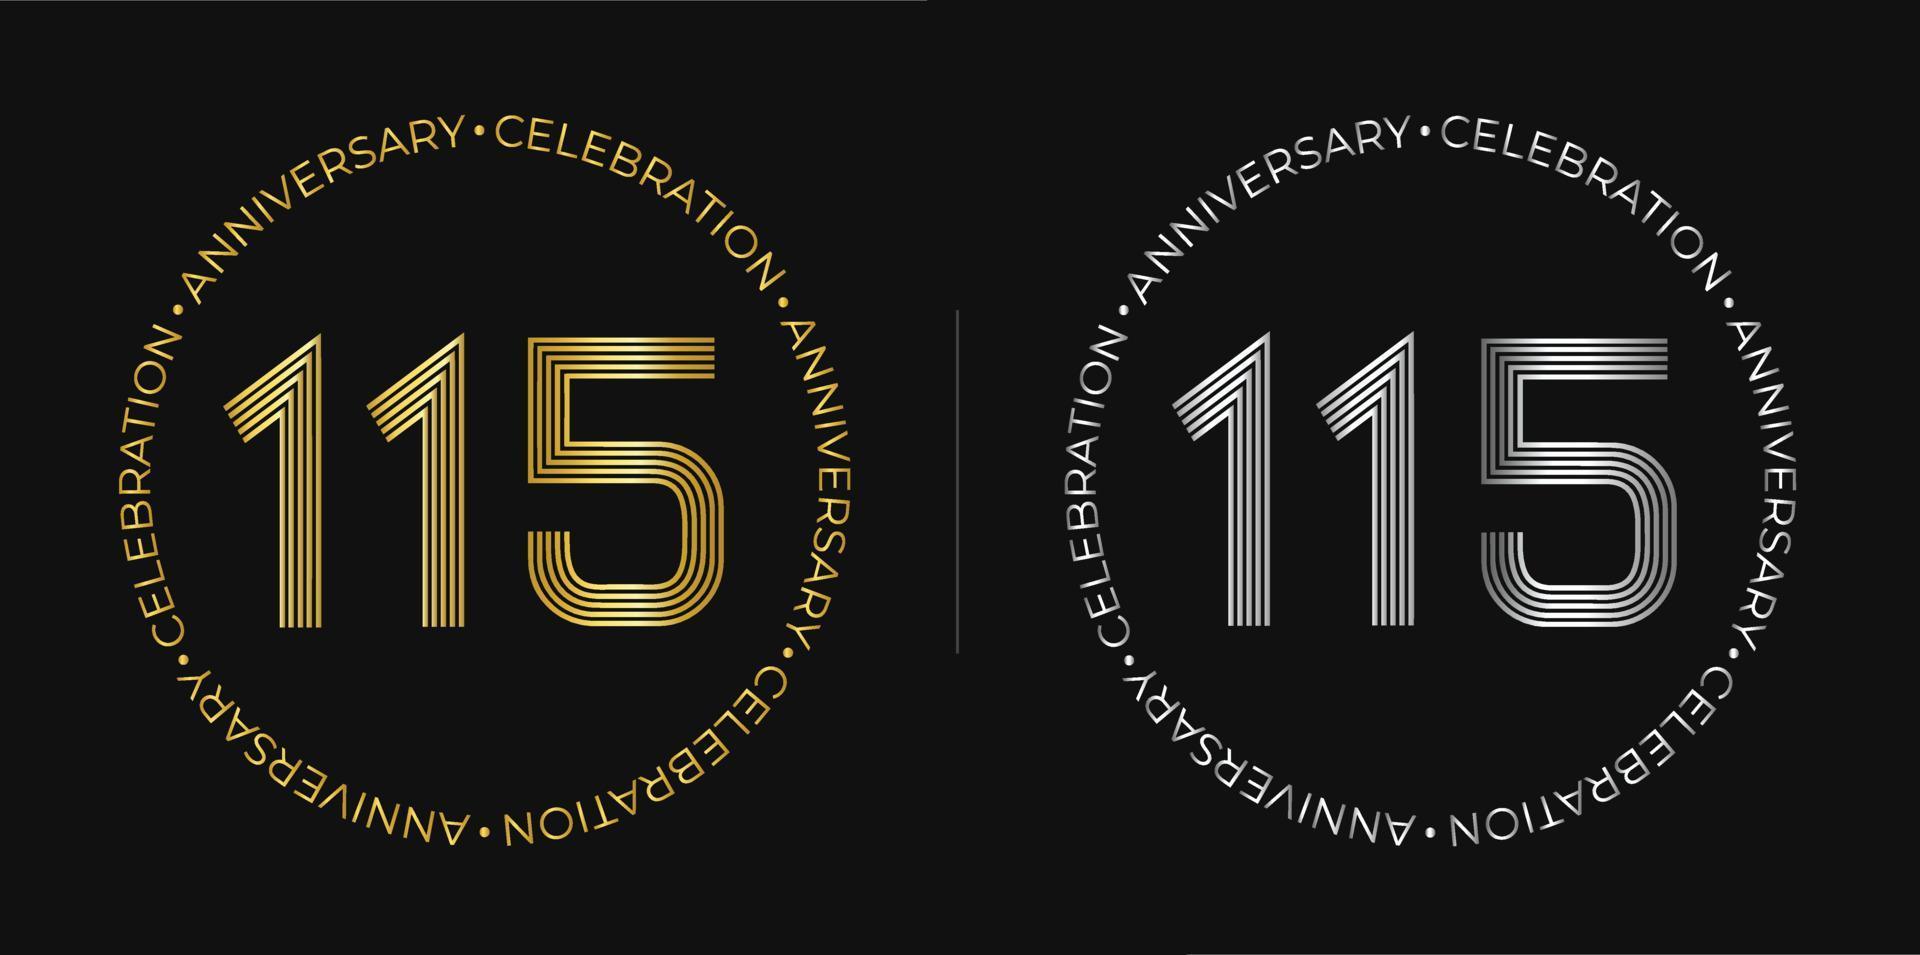 115e anniversaire. bannière de célébration d'anniversaire de cent quinze ans aux couleurs dorées et argentées. logo circulaire avec des chiffres originaux aux lignes élégantes. vecteur